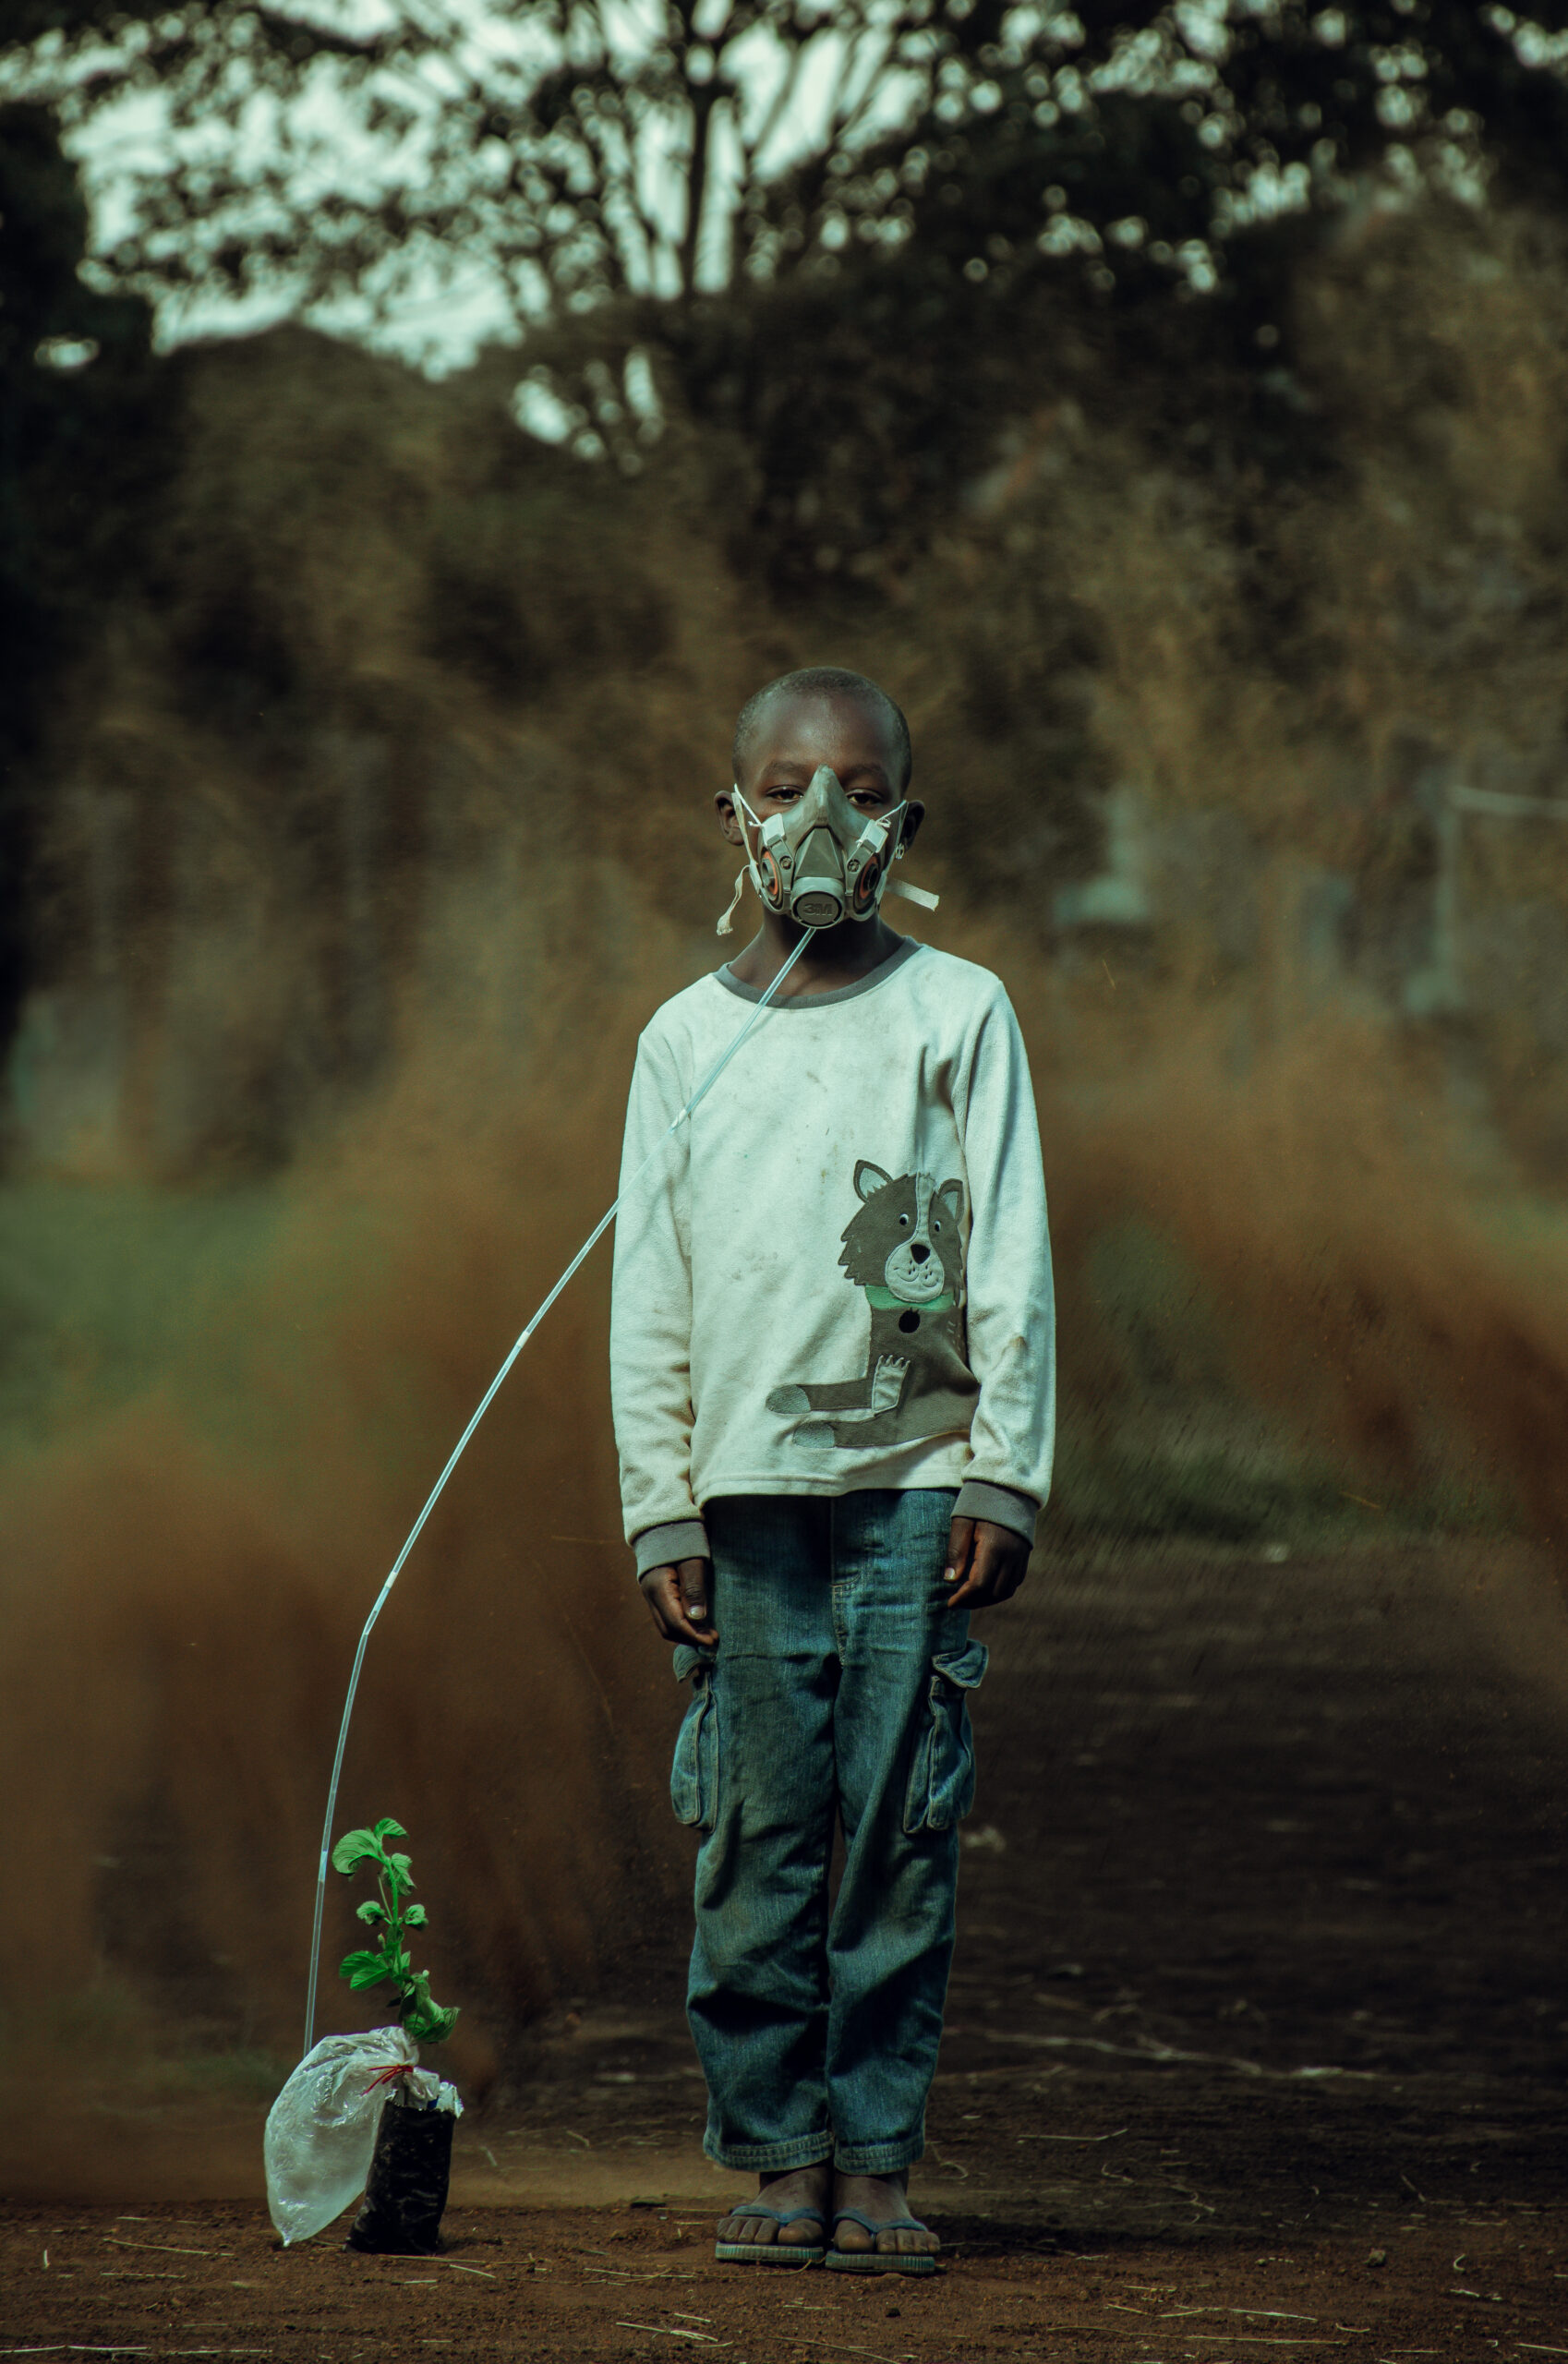 Un garçon du peuple Luo du Kenya portant un masque à oxygène relié à une plante pour représenter l'importance des forêts face à la crise climatique. 
Gagnants du Concours Photo “Solutions Innovatrices des Peuples Autochtones”.
Nom de la photo: Le dernier souffle. Auteur : Kevin Ocheng